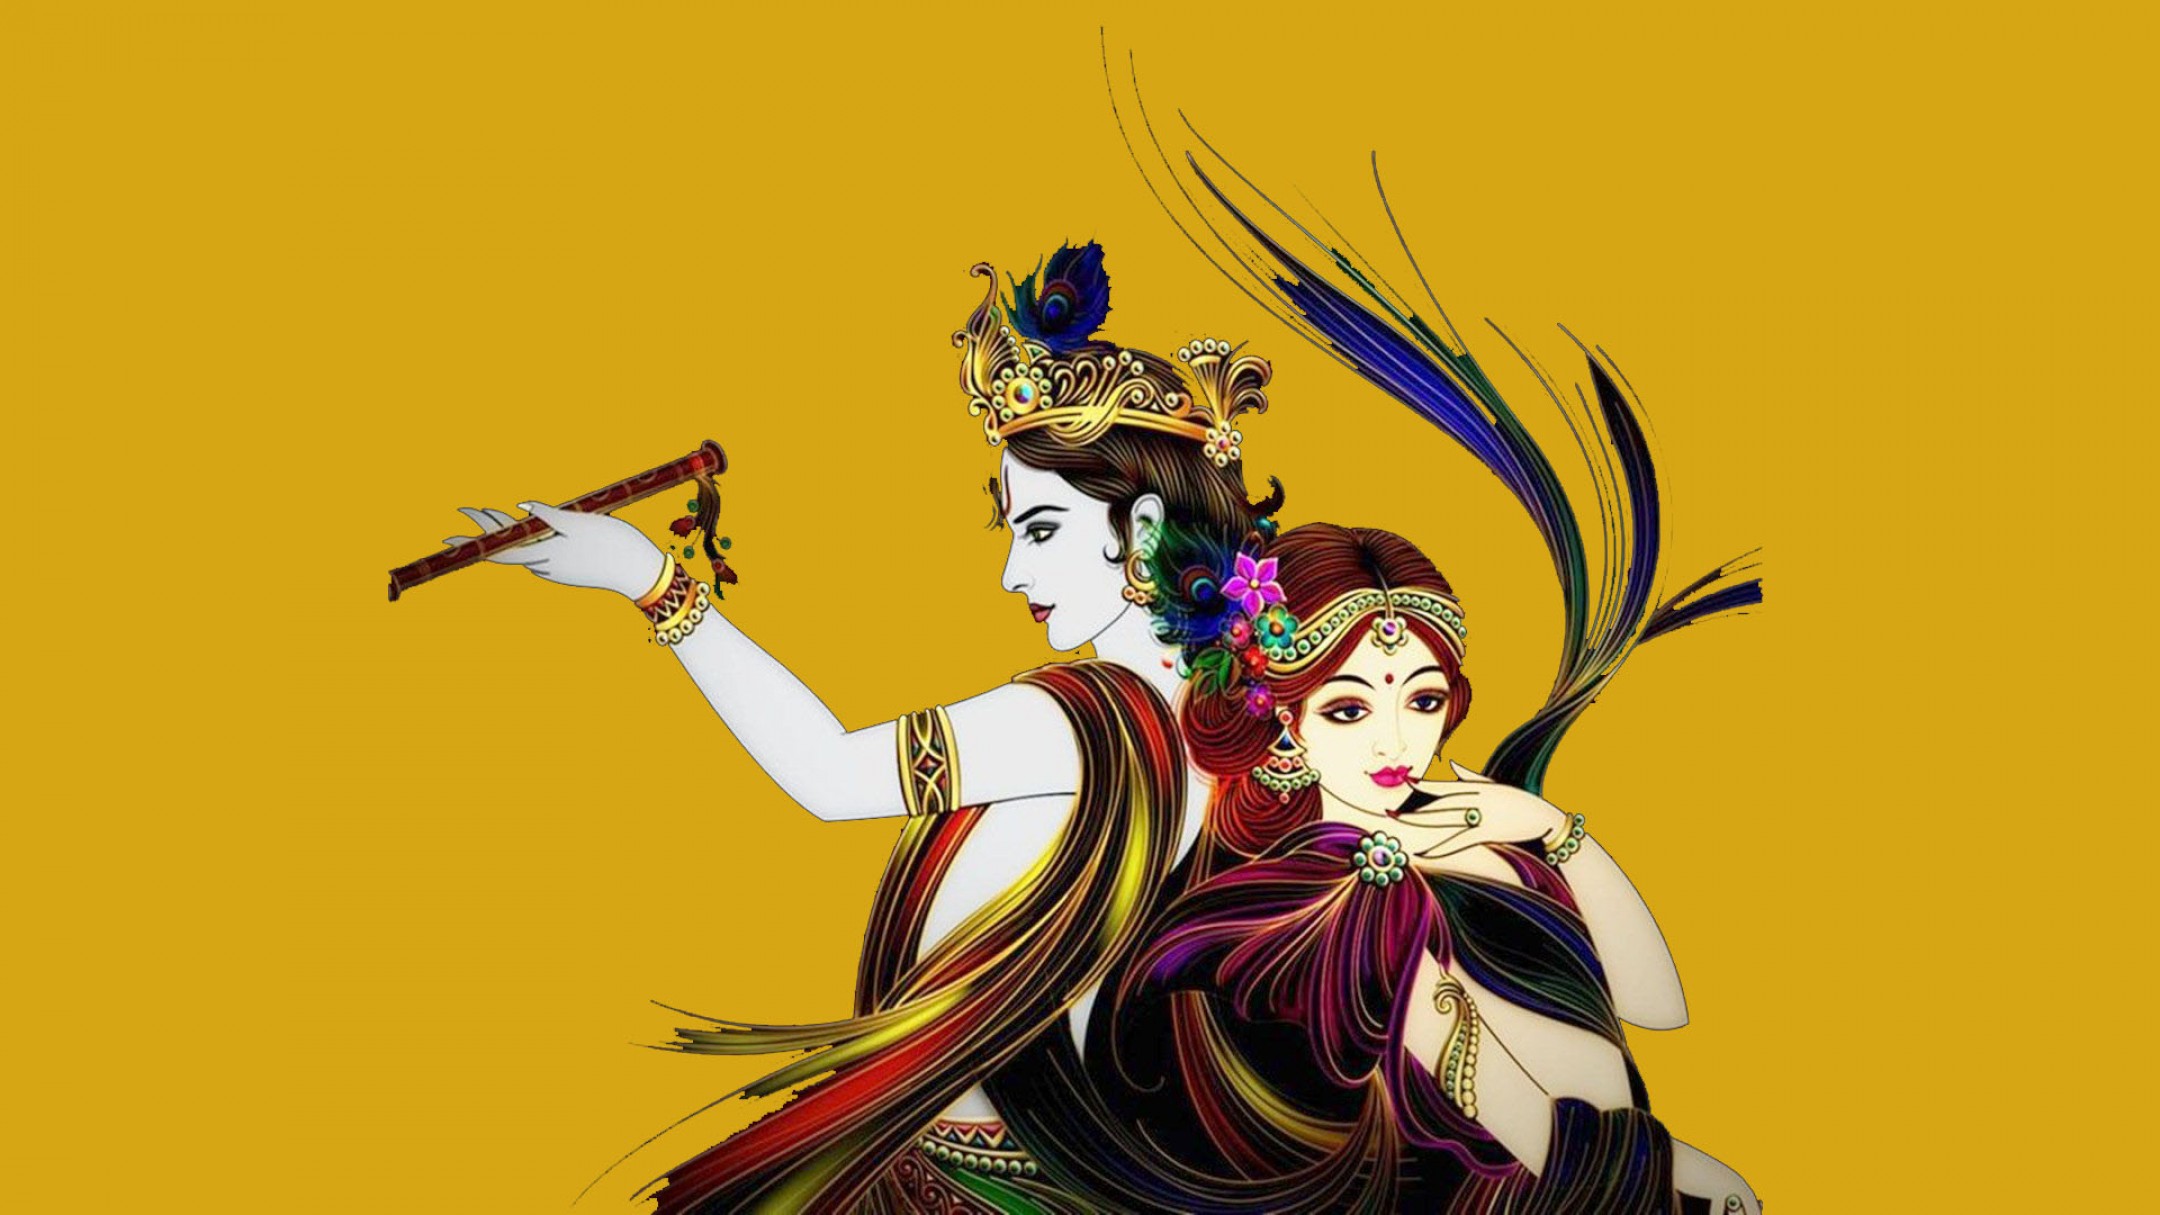 100+] Krishna Desktop Wallpapers | Wallpapers.com